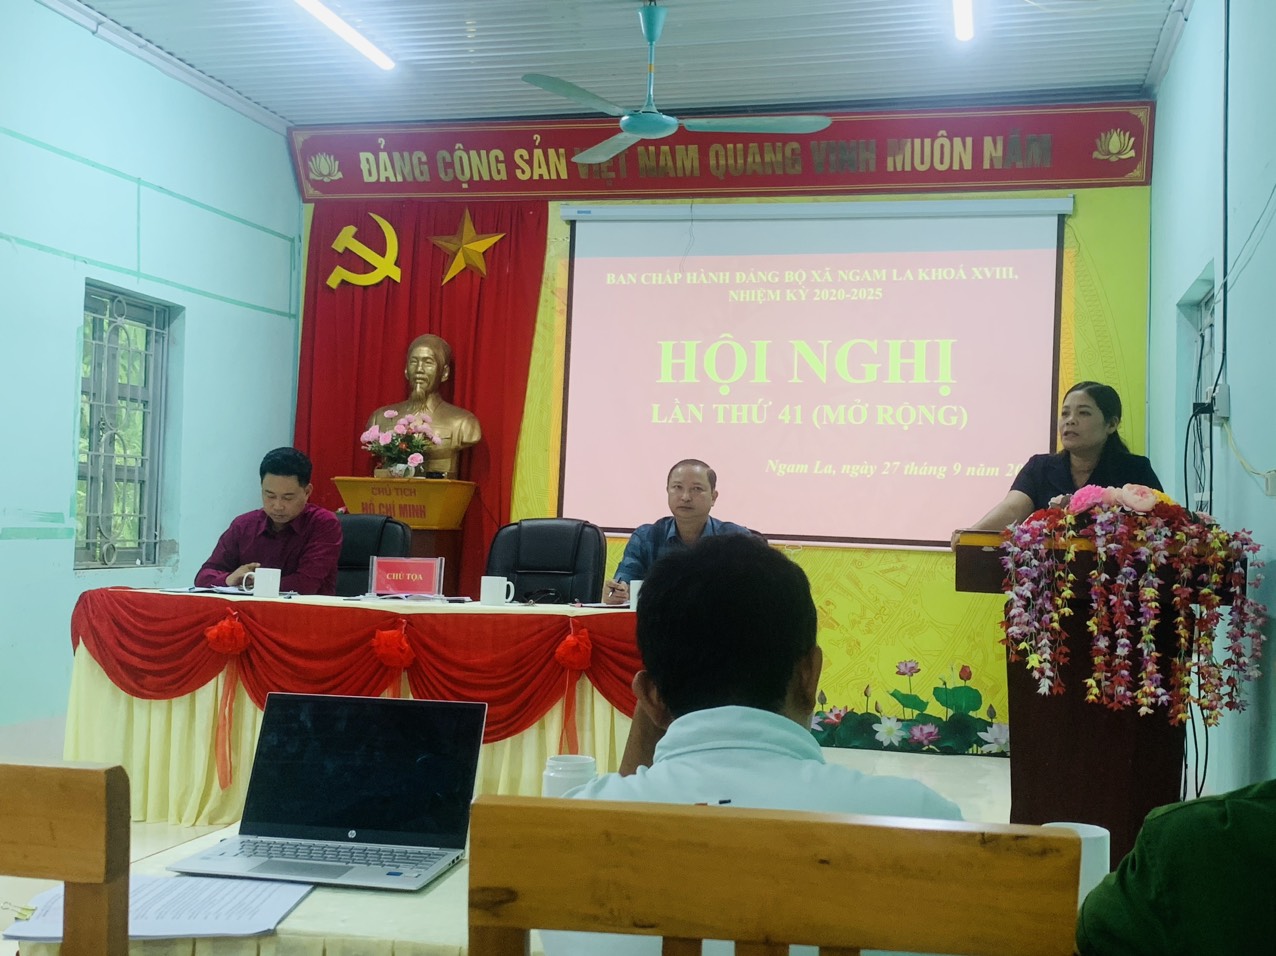 Hội nghị Ban Chấp hành Đảng bộ xã lần thứ 41 (mở rộng)